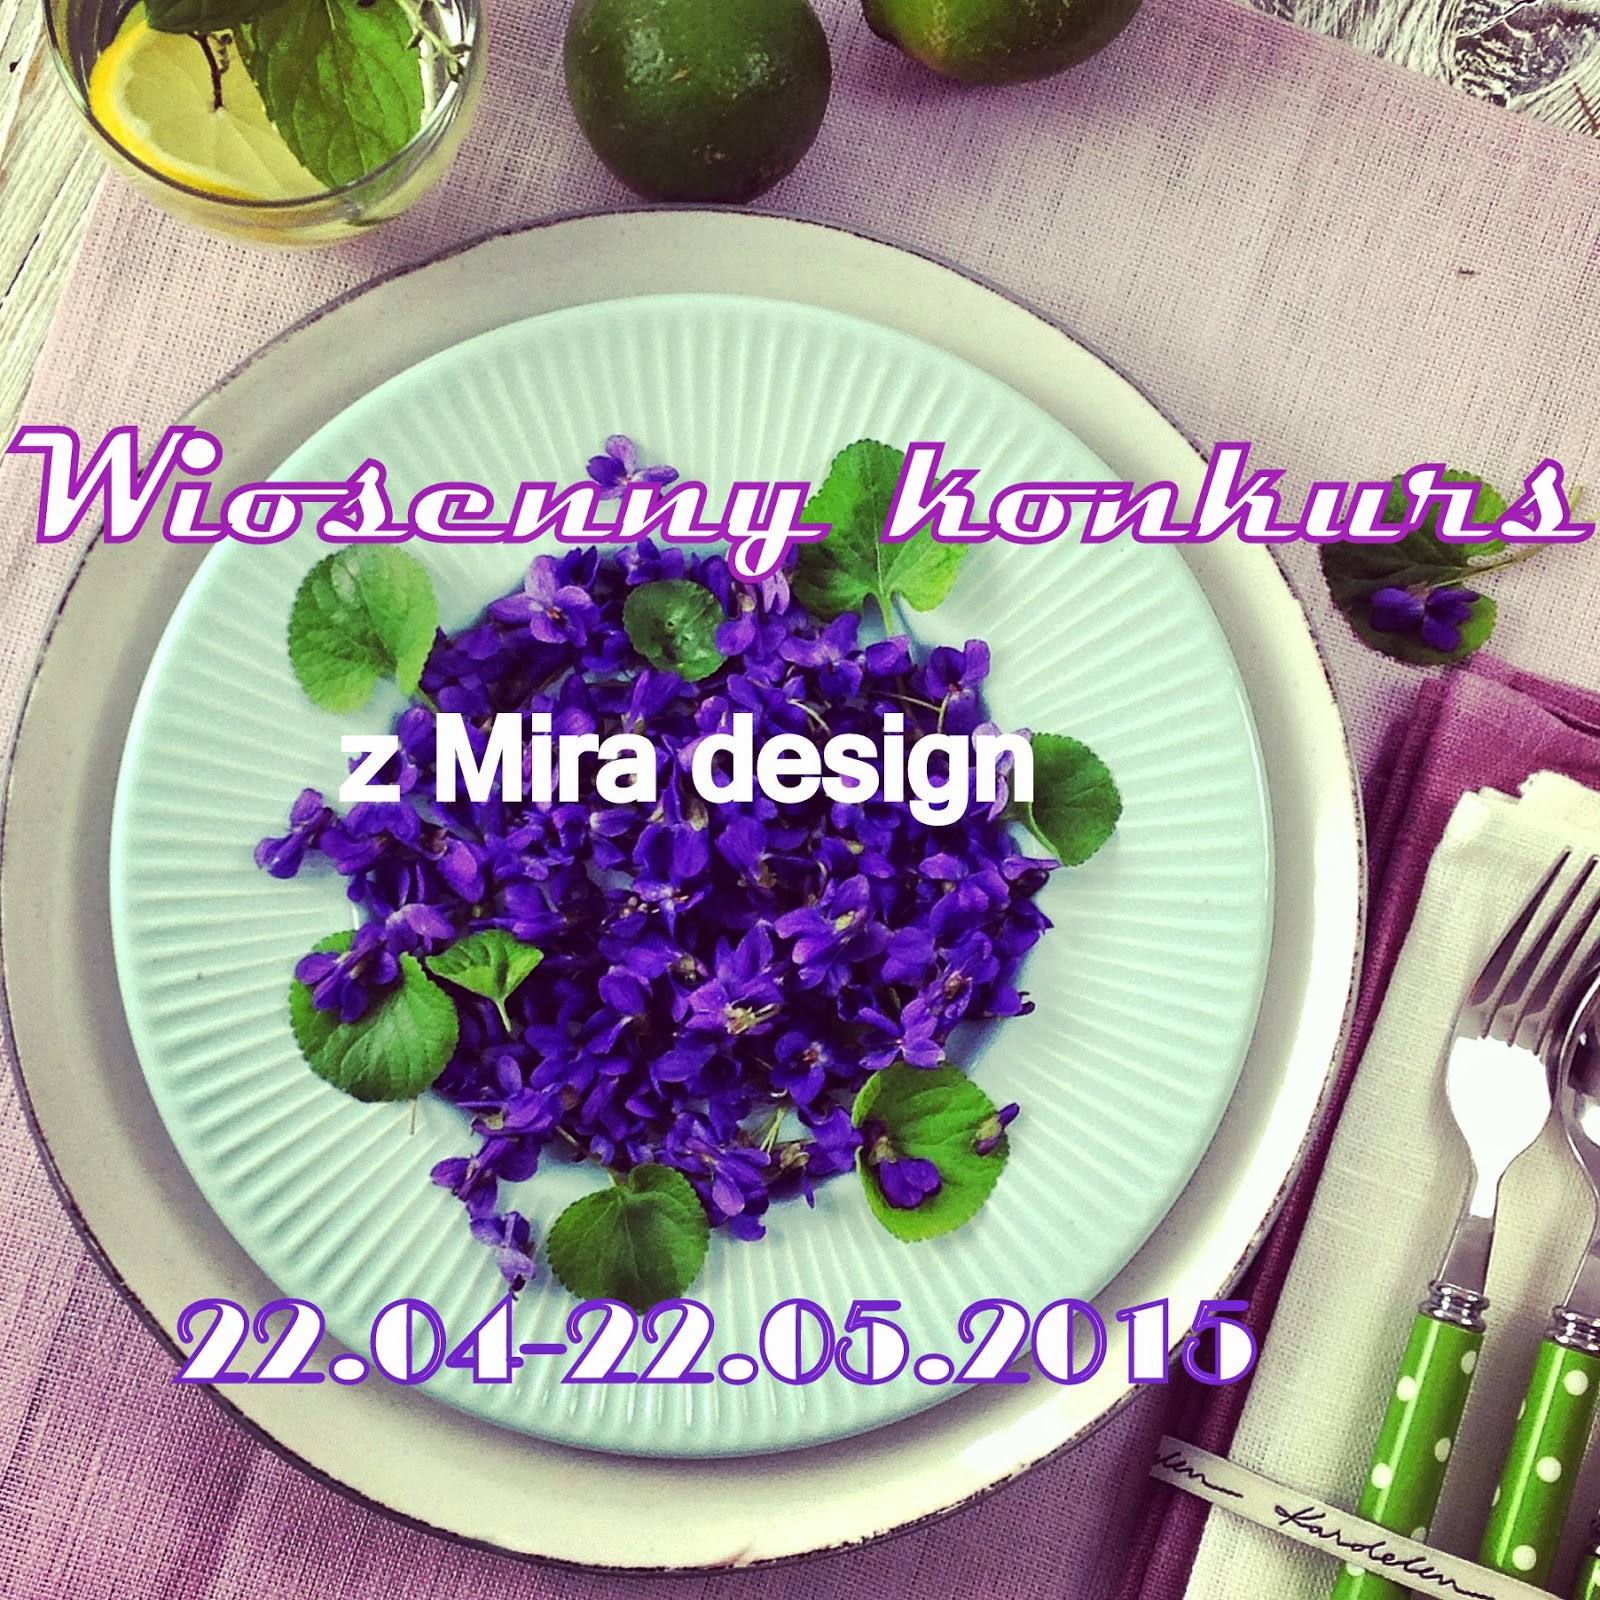 Wiosenny konkurs z Mira design